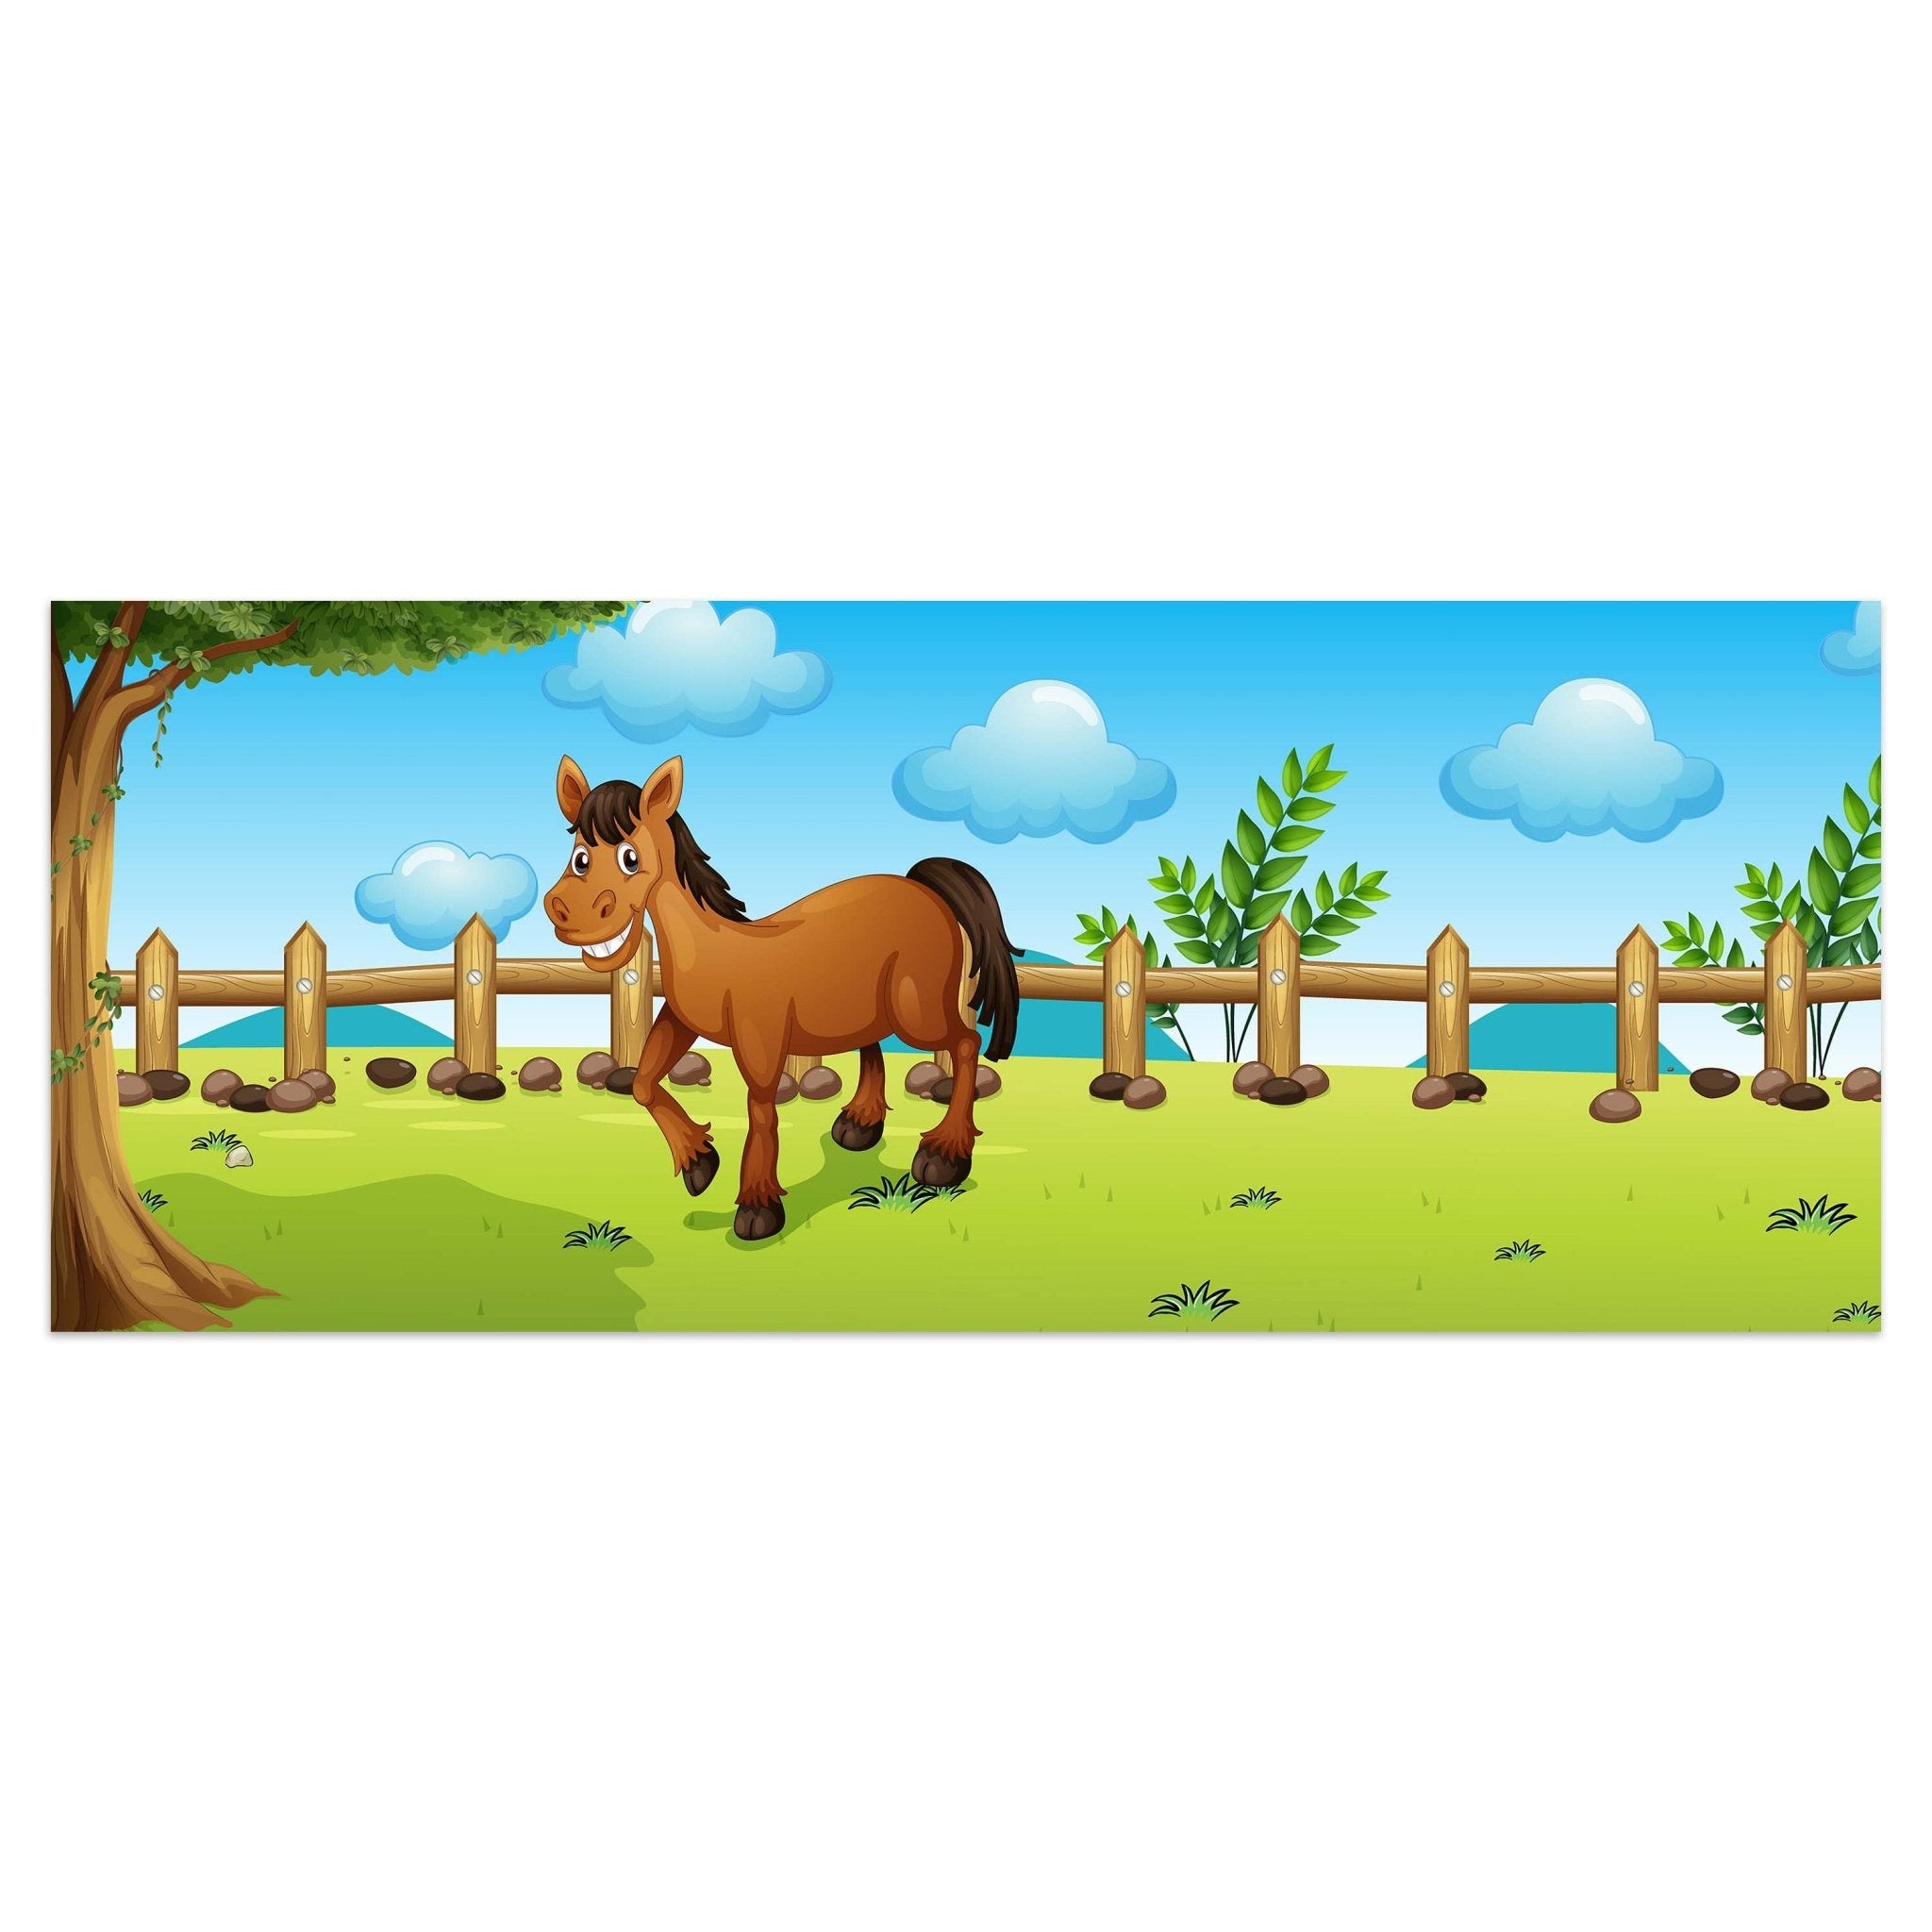 Leinwandbild Pferde auf der Wiese M0500 kaufen - Bild 1